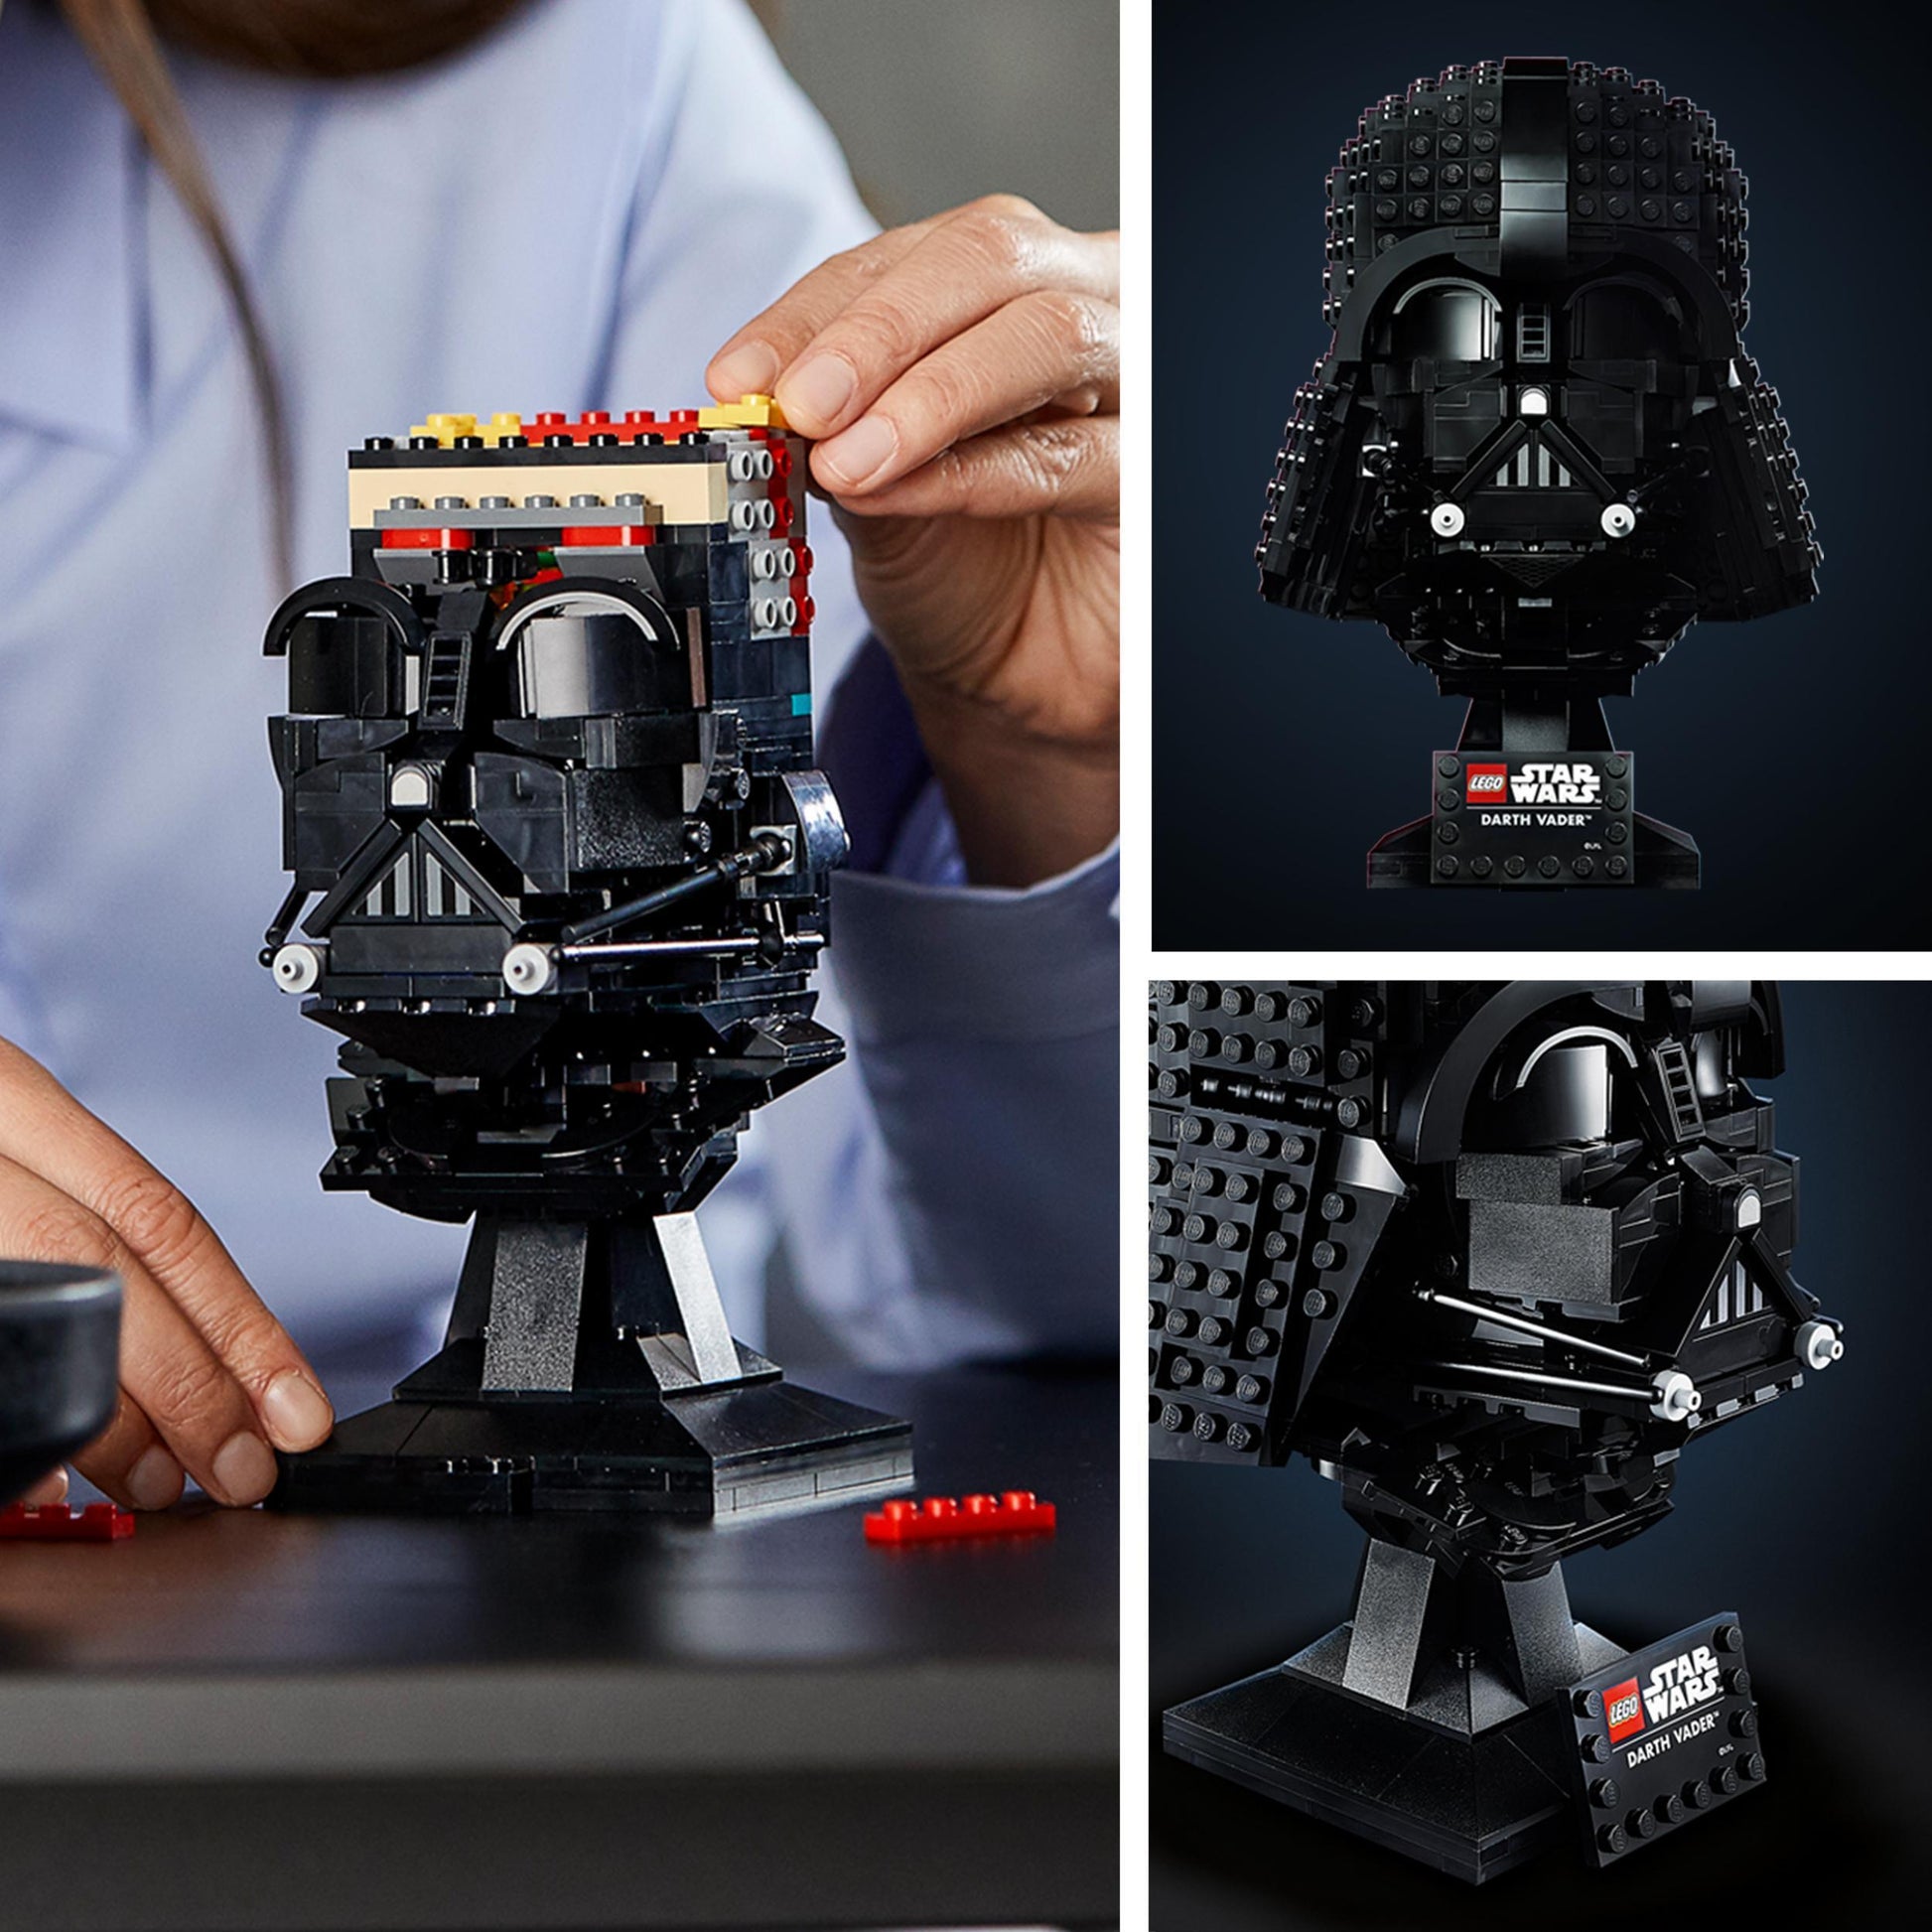 LEGO Darth Vader helm 75304 StarWars LEGO STARWARS @ 2TTOYS LEGO €. 67.99